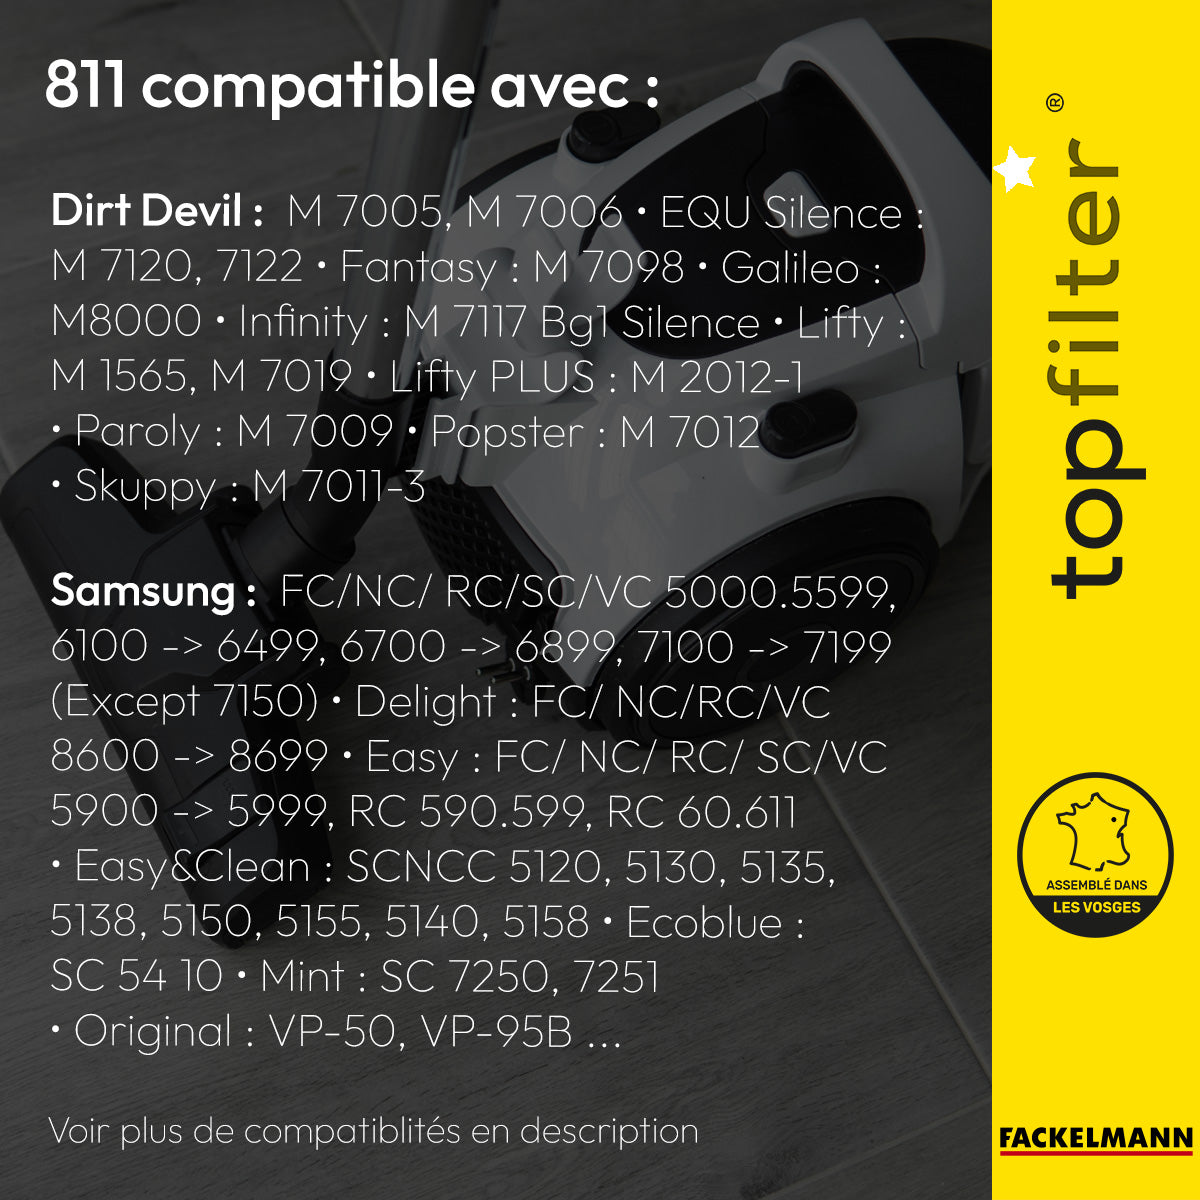 Lot de 4 packs de 4 sacs aspirateur 64811 Samsung et Dirt Devil TopFilter Premium